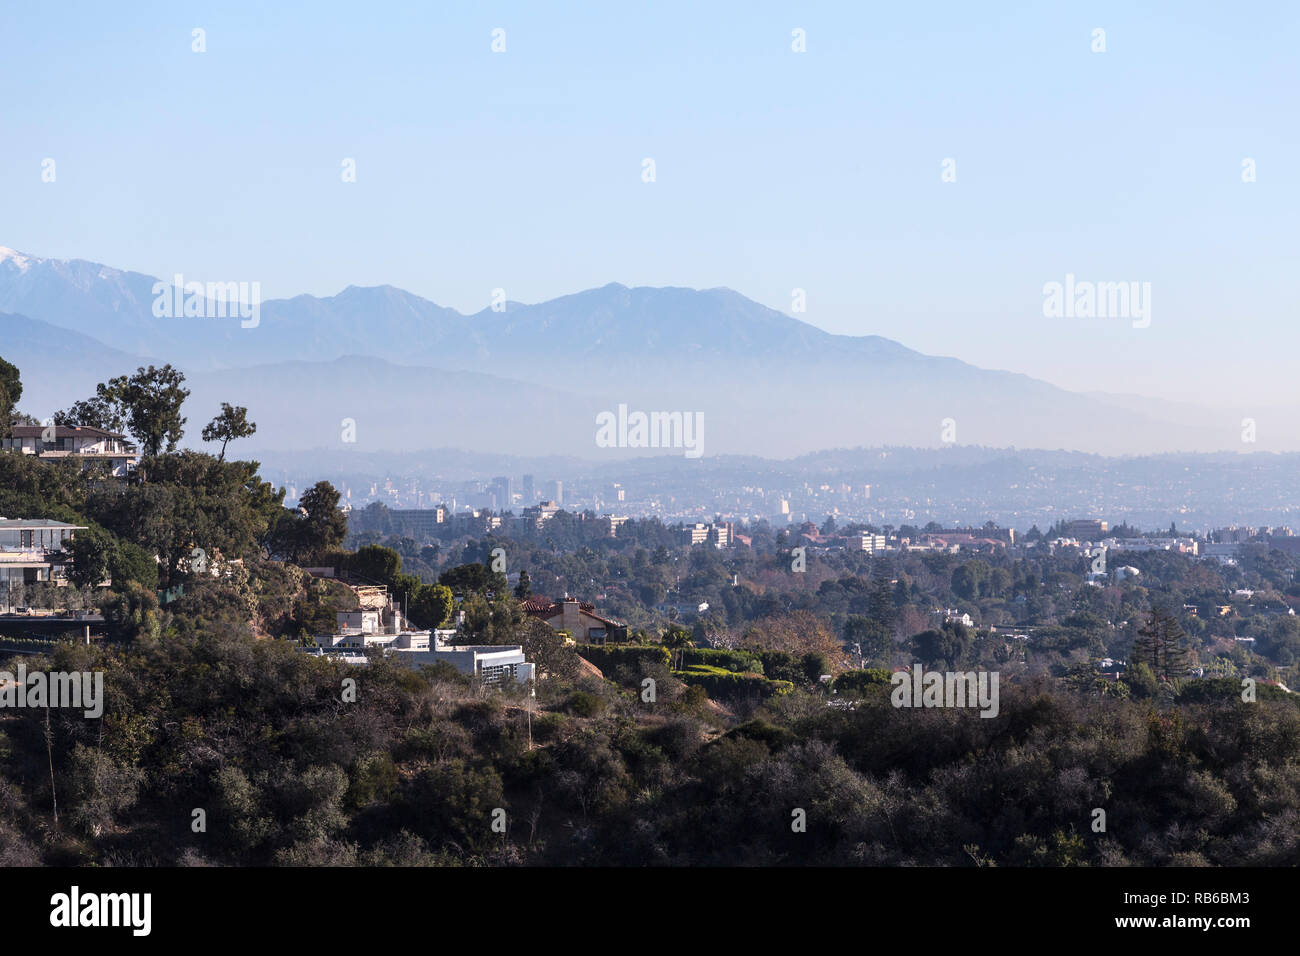 Smoggy mattina cityscape vista collina case con Hollywood e Los Angeles e le montagne di San Gabriel in background. Foto Stock